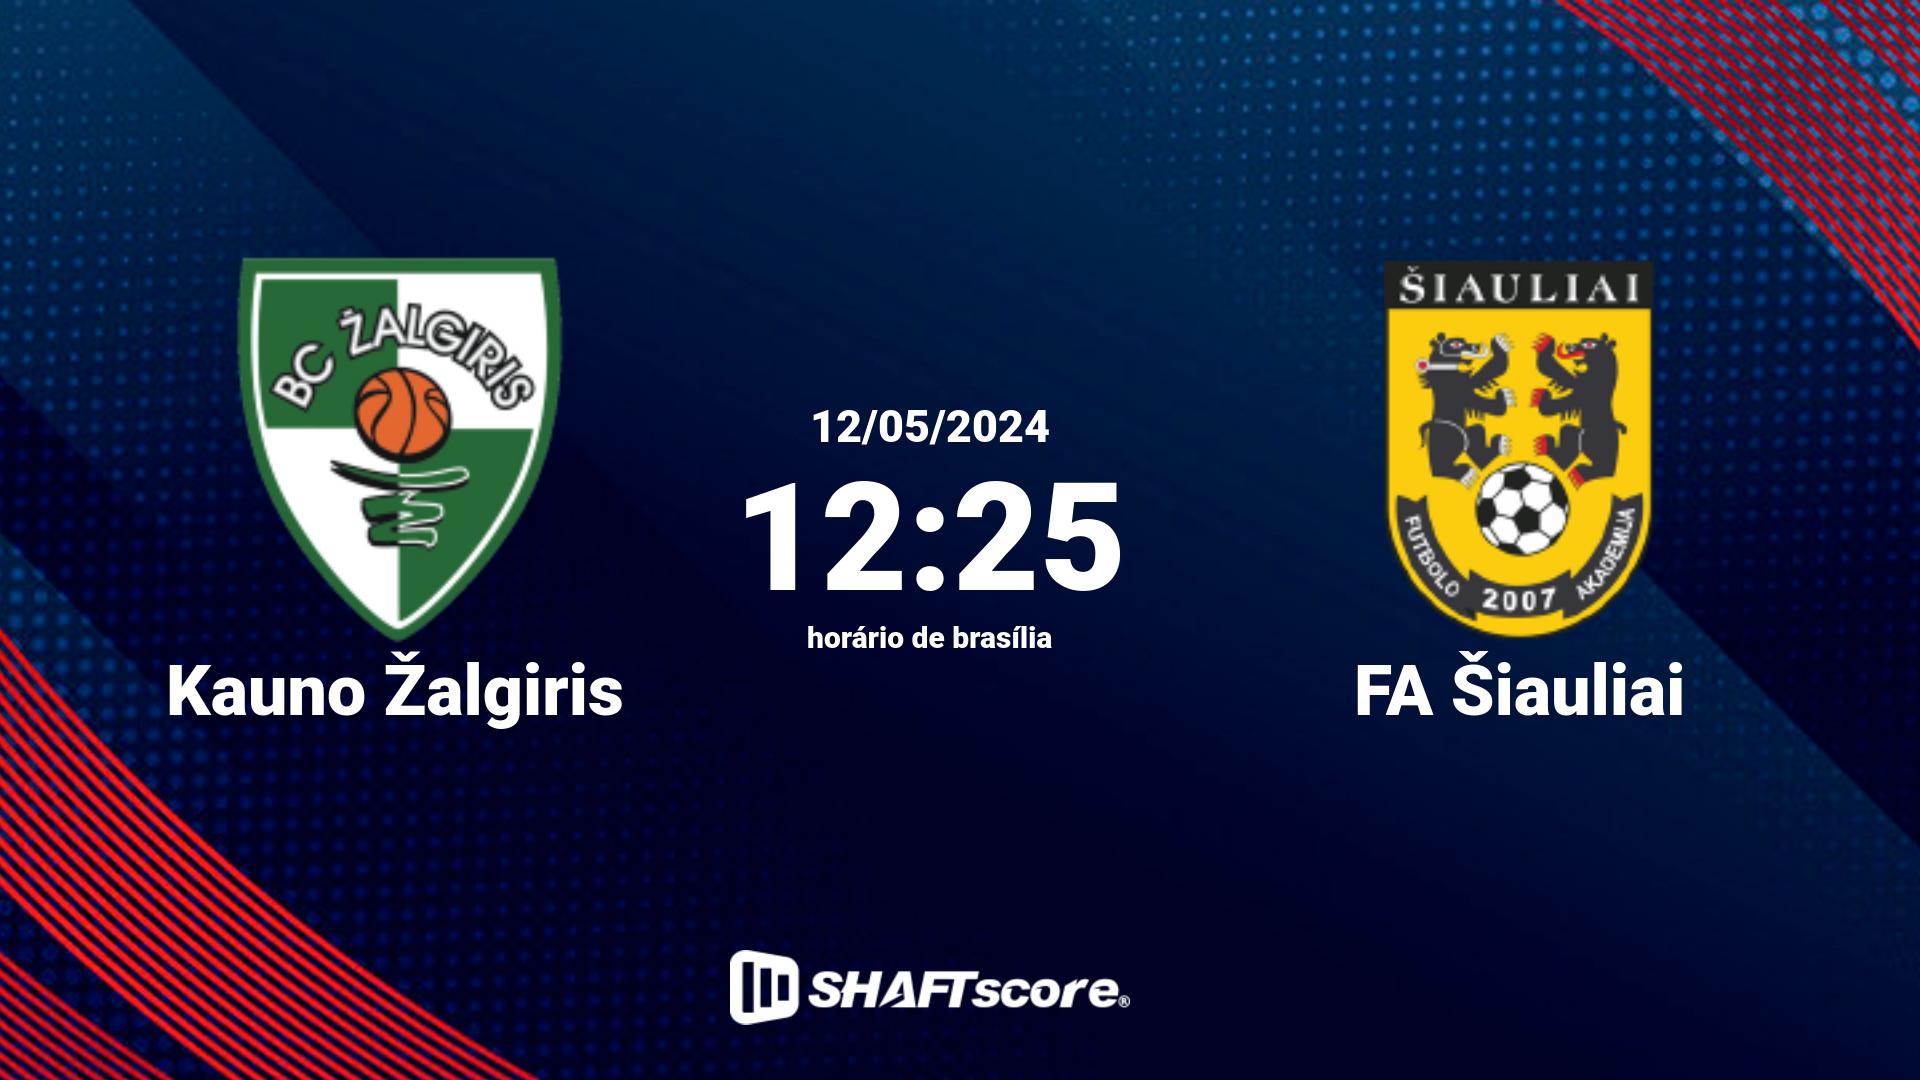 Estatísticas do jogo Kauno Žalgiris vs FA Šiauliai 12.05 12:25